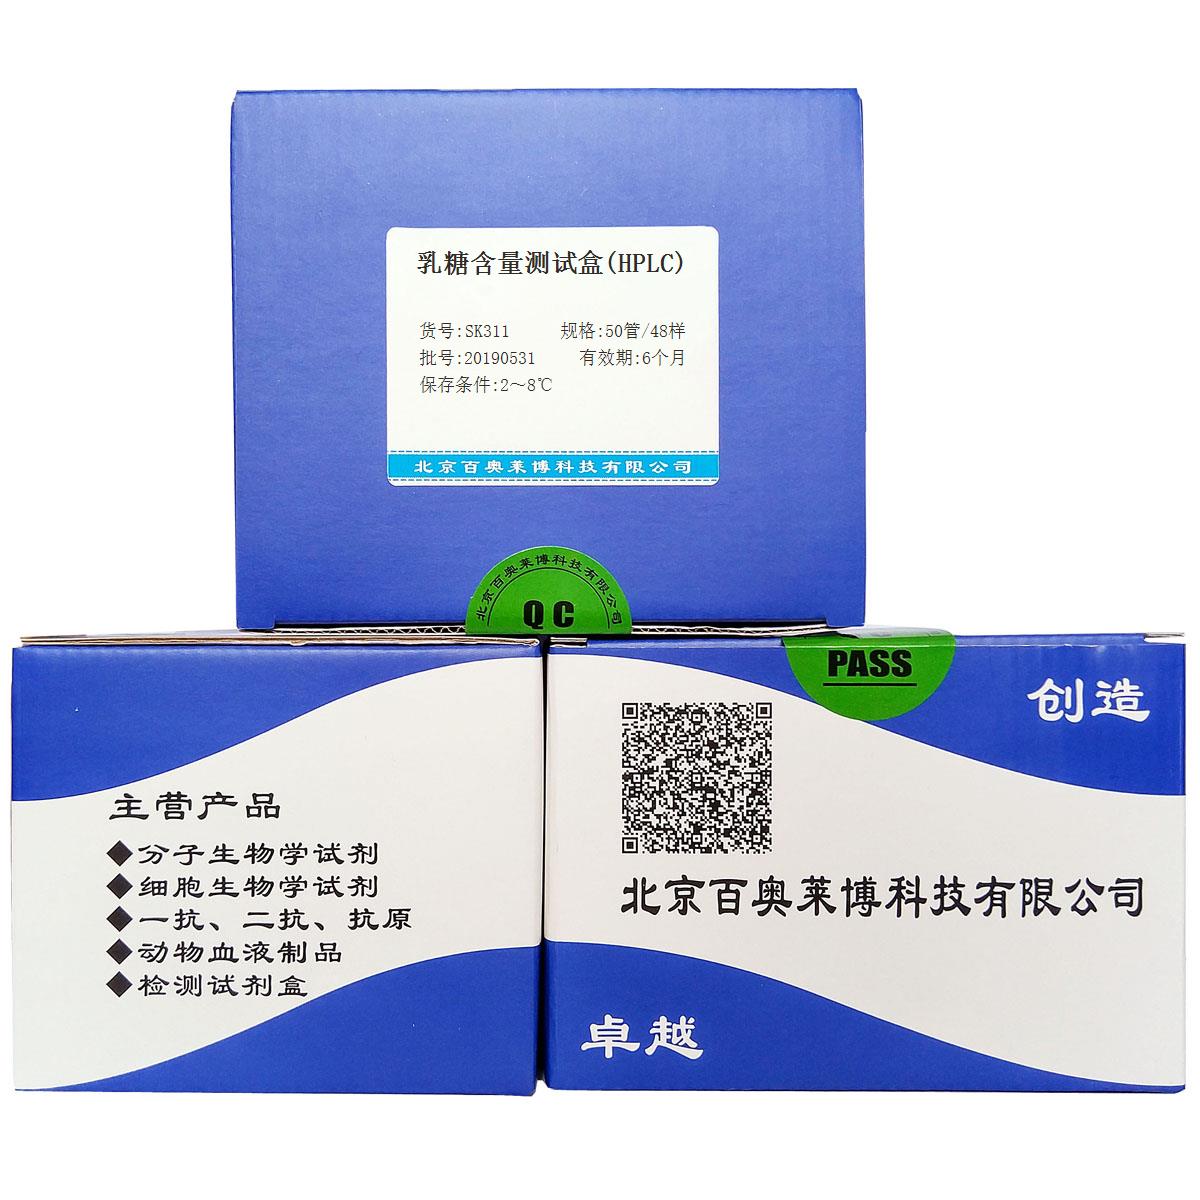 乳糖含量测试盒(HPLC)北京厂家